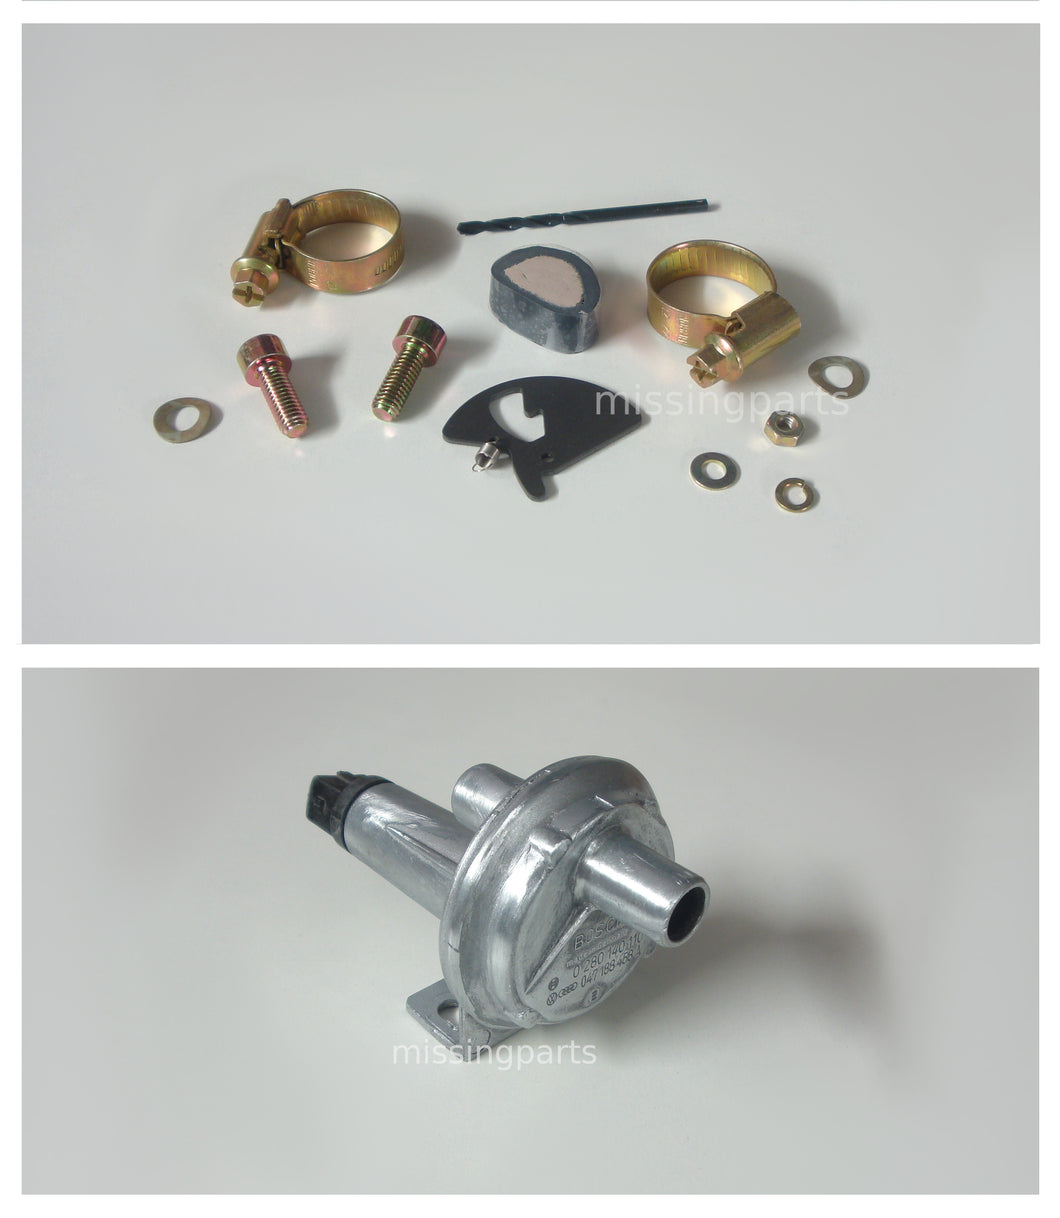 Reparatur Set für Bosch Zusatzluftschieber (Version 2) / Repair Set for Bosch Auxiliary Air Valve (Version 2)